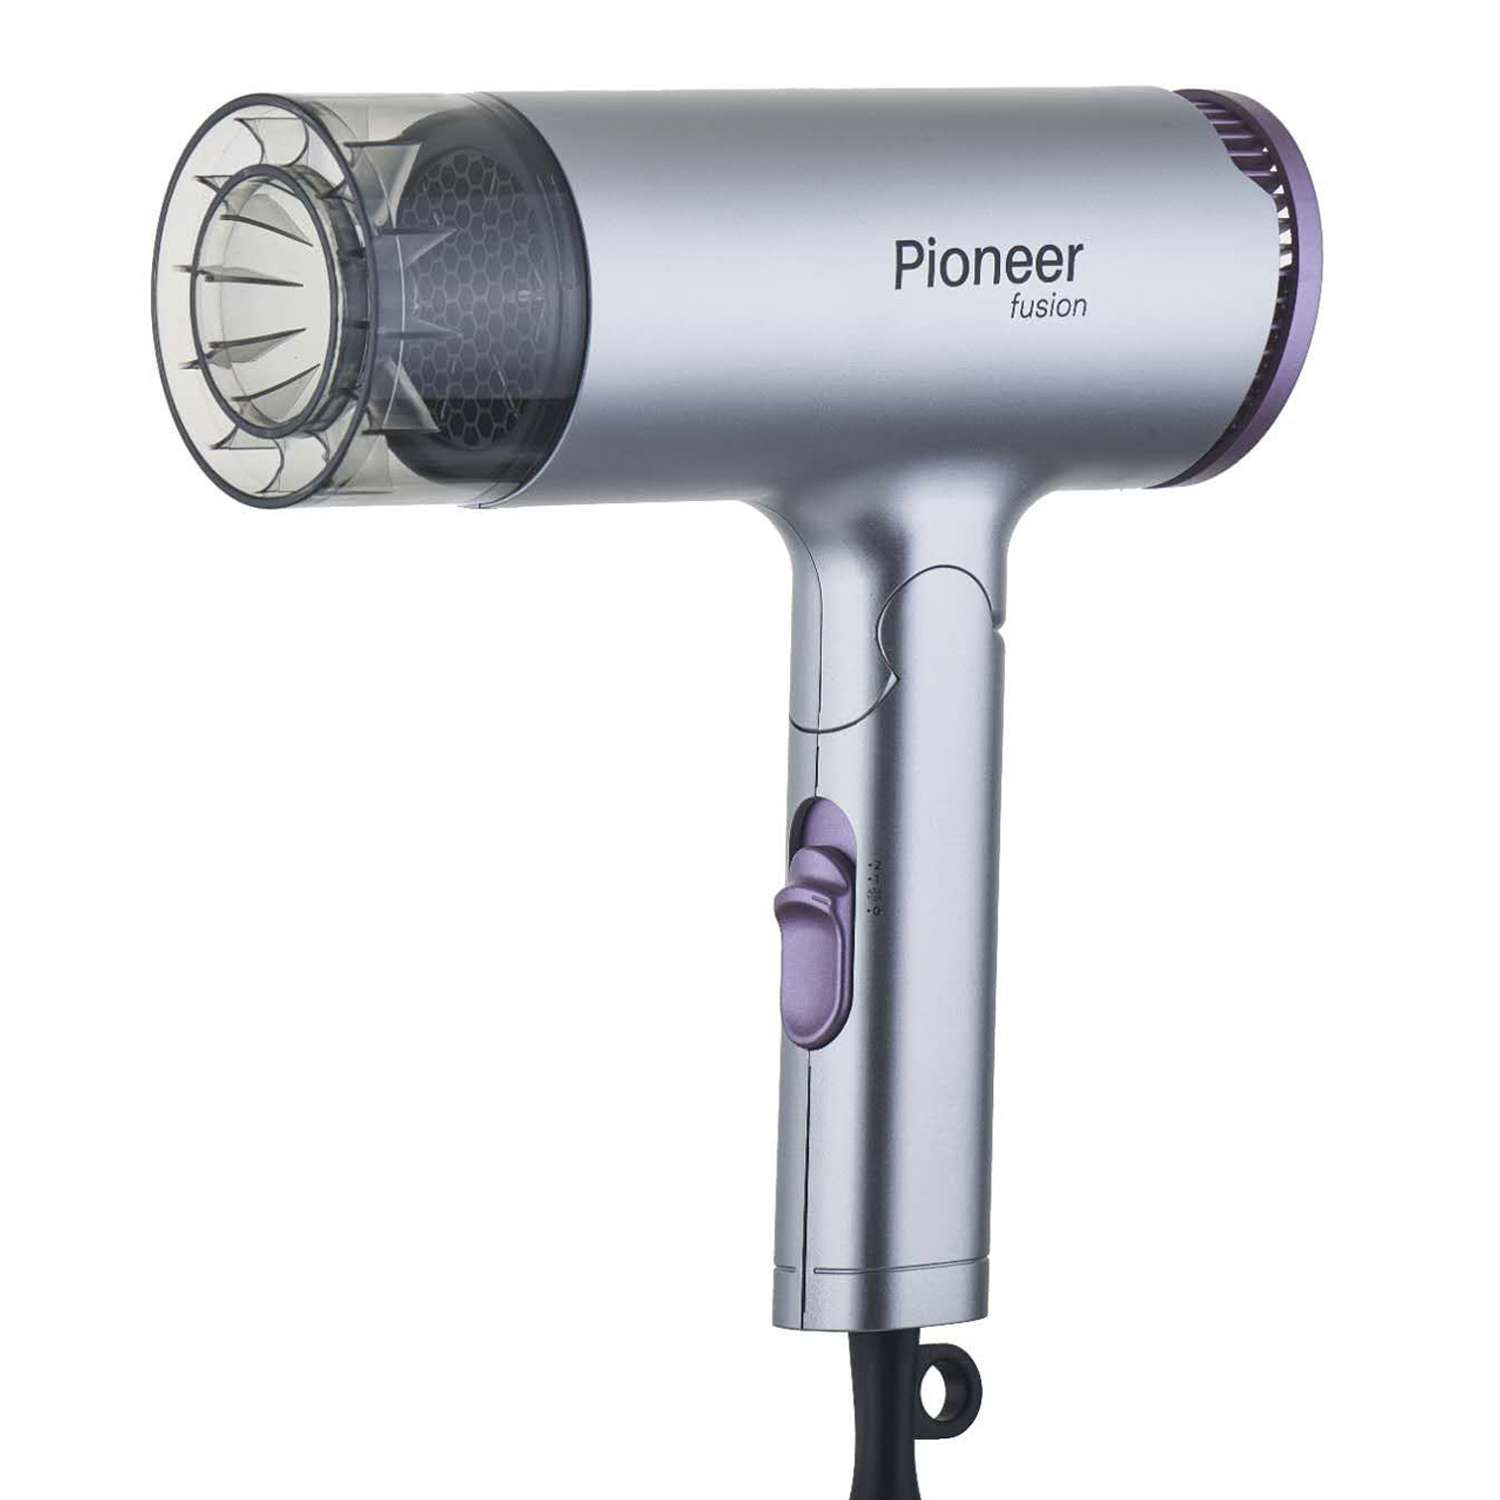 Фен для волос Pioneer с ионизацией серебристый/фиолетовый - фото 1